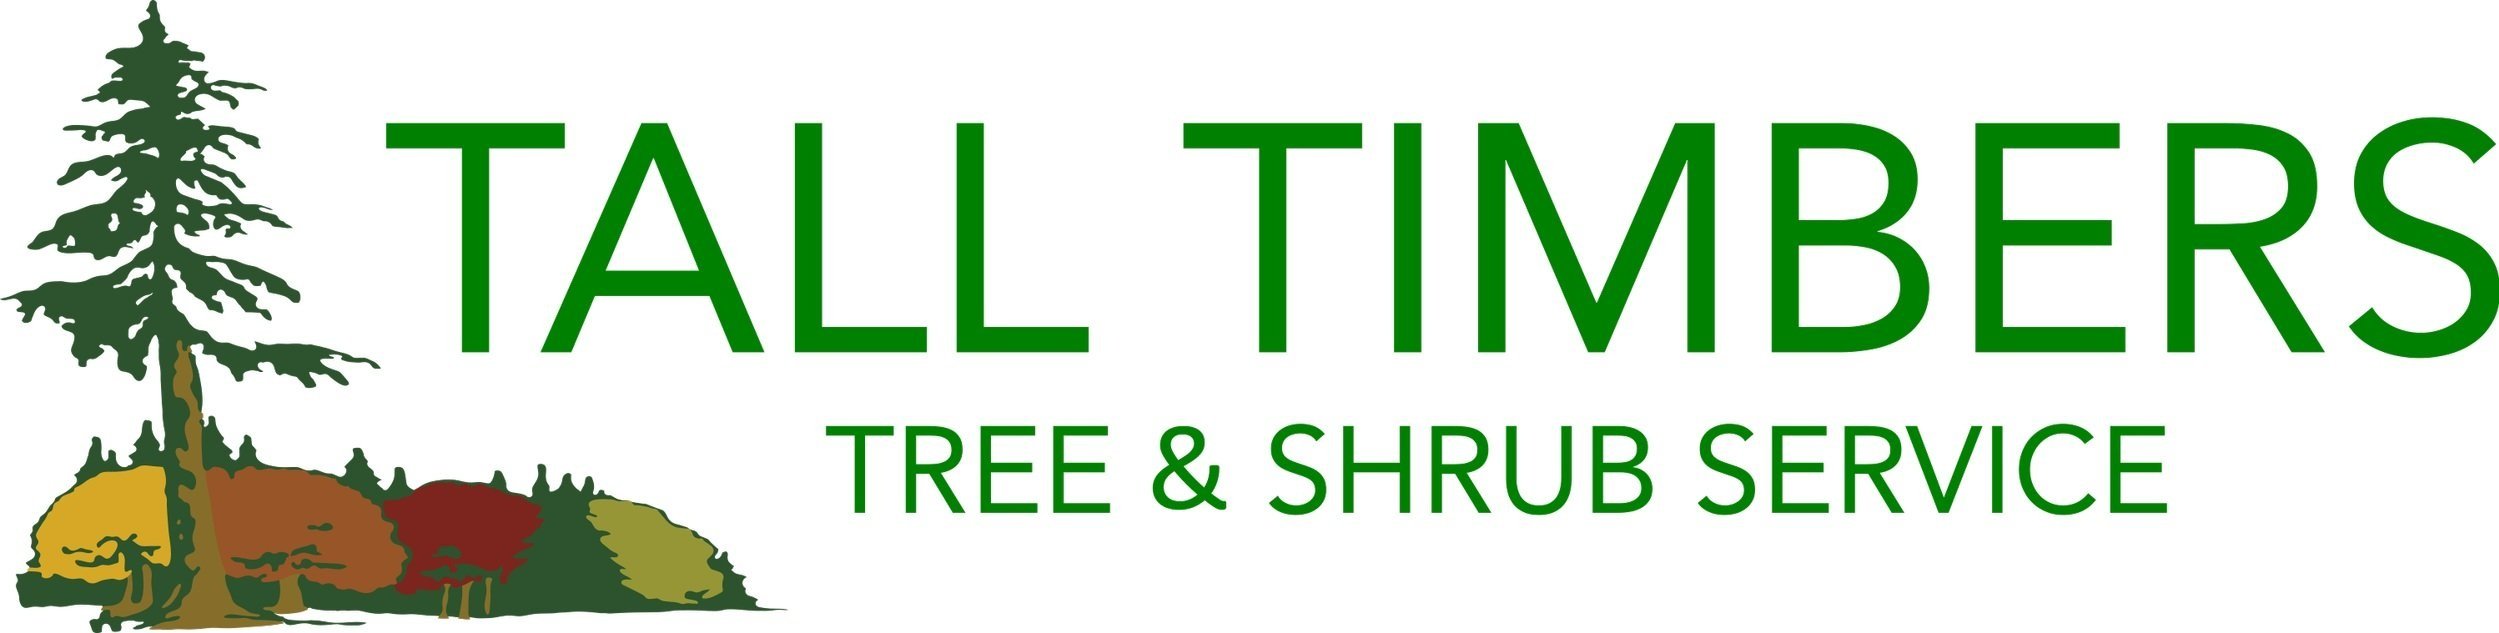 Tall Timbers Tree &amp; Shrub Service - Colorado Springs - Tree Care, Tree Spraying, Tree Removal, Tree Trimming, Tree Prune